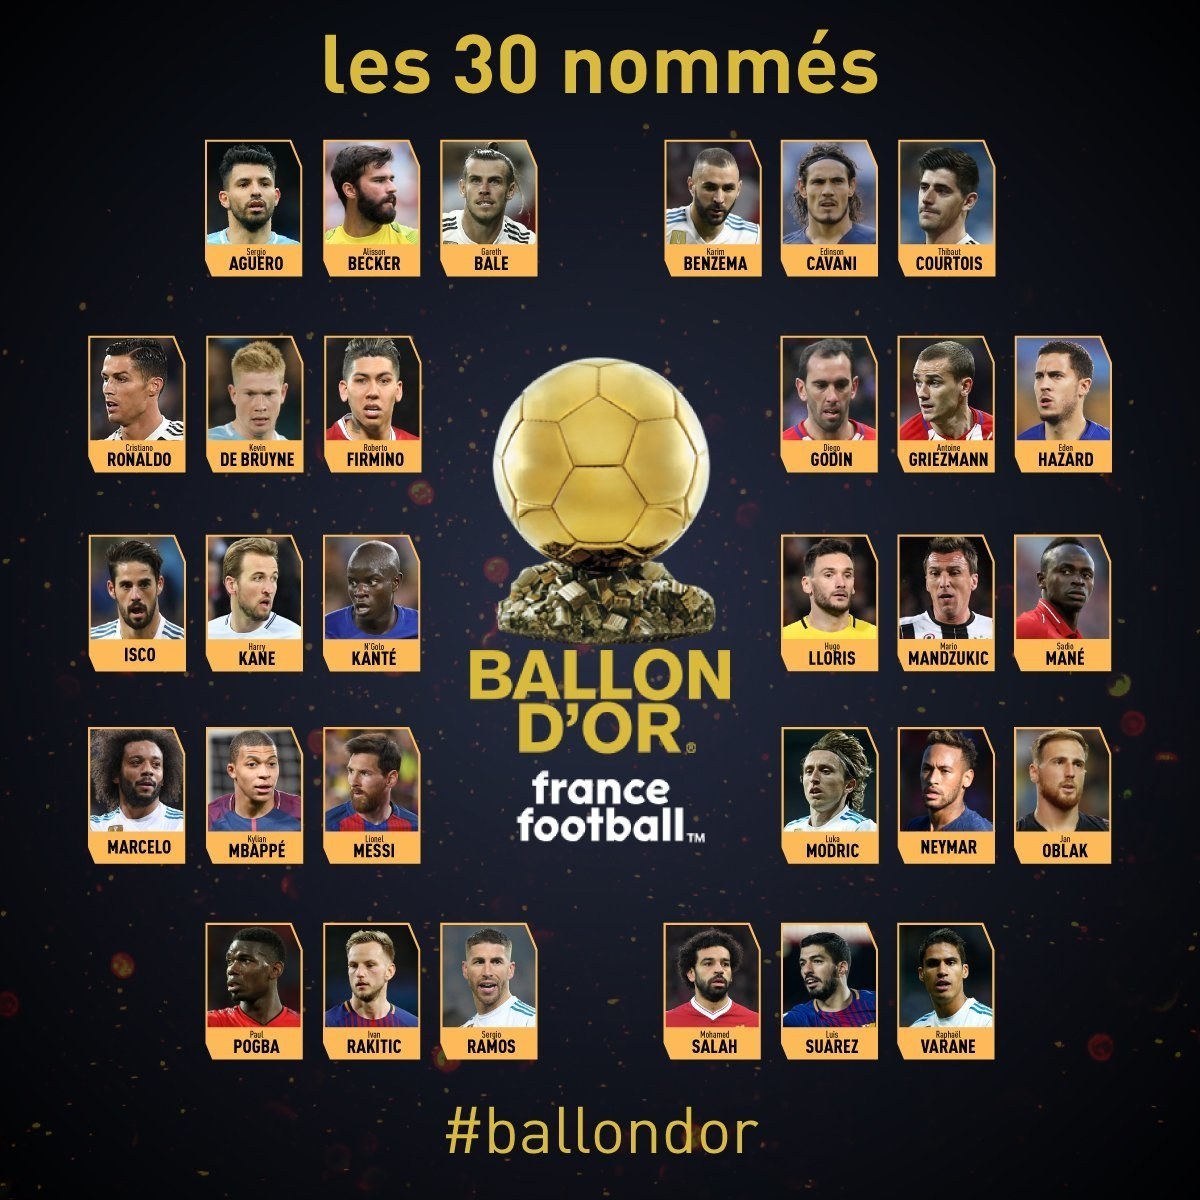 Αυτοί είναι οι 11 απόντες των υποψηφίων για το «Ballon d’Or»